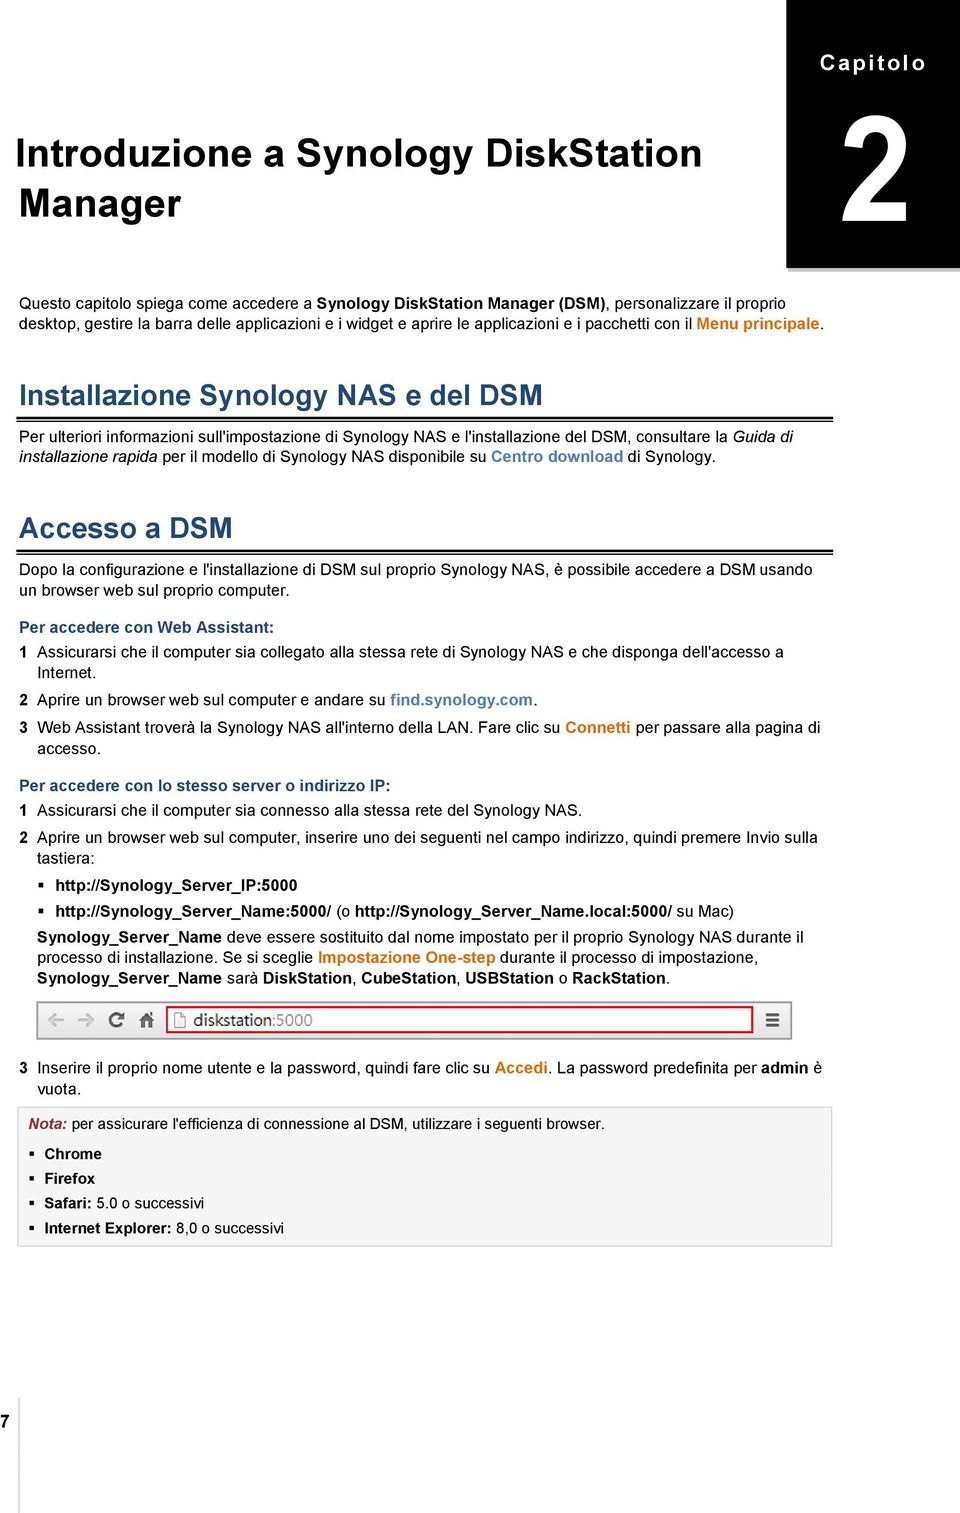 Installazione Synology NAS e del DSM Per ulteriori informazioni sull'impostazione di Synology NAS e l'installazione del DSM, consultare la Guida di installazione rapida per il modello di Synology NAS